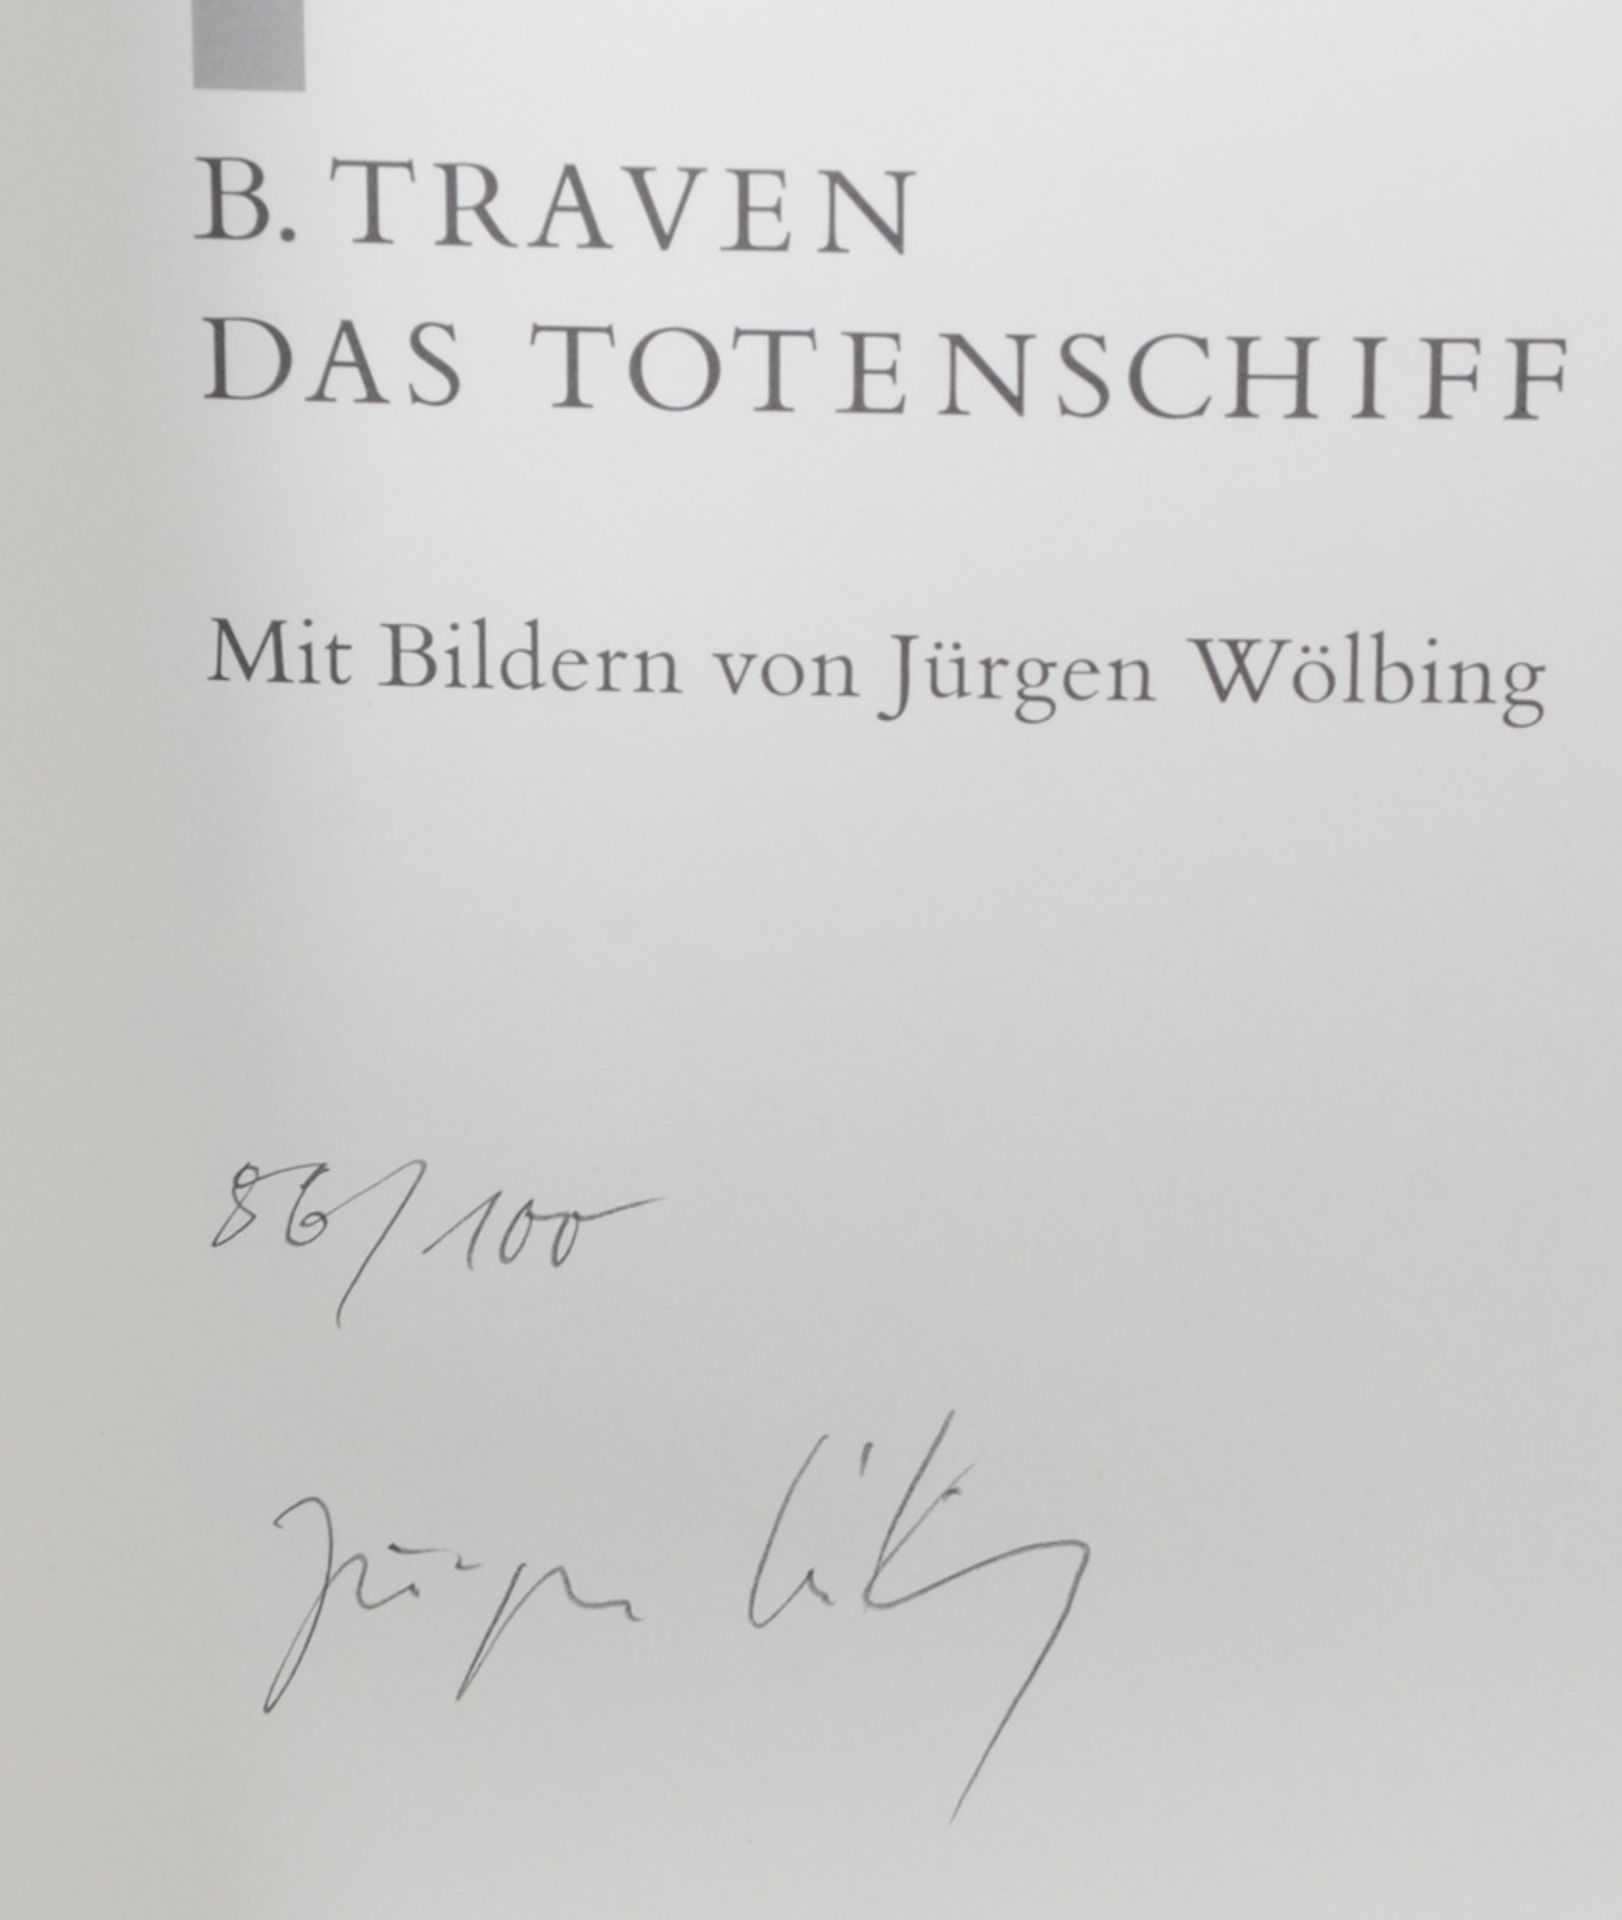 B. Traven, „Das Totenschiff“ mit Bildern von Jürgen Wölbing, Büchergilde Gutenberg 1999. - Image 2 of 2